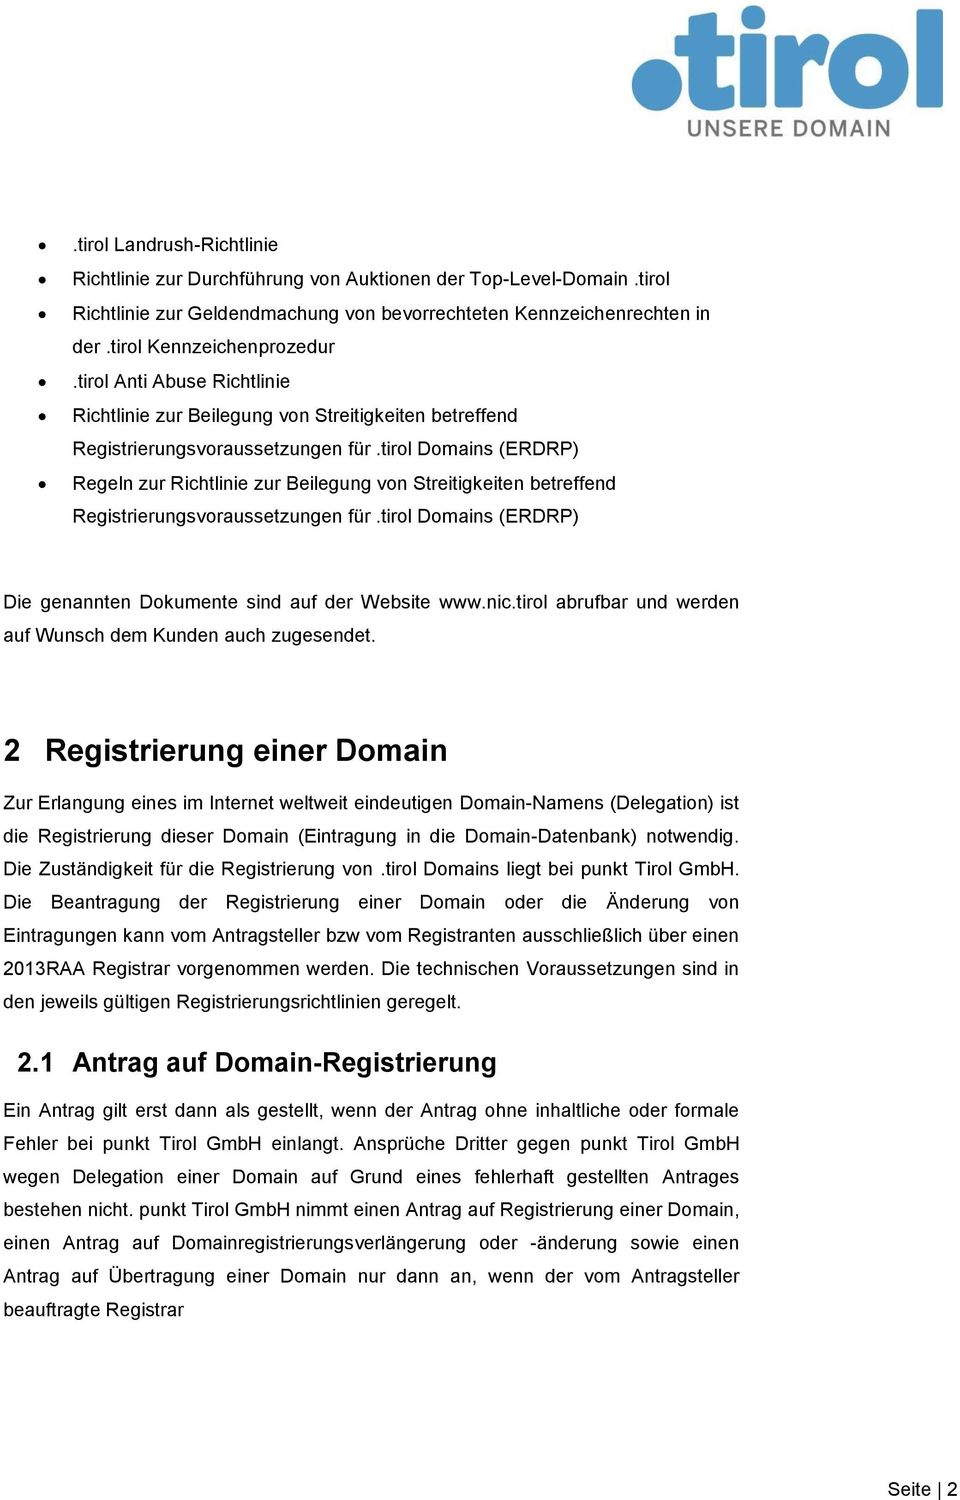 tirol Domains (ERDRP) Regeln zur Richtlinie zur Beilegung von Streitigkeiten betreffend Registrierungsvoraussetzungen für.tirol Domains (ERDRP) Die genannten Dokumente sind auf der Website www.nic.